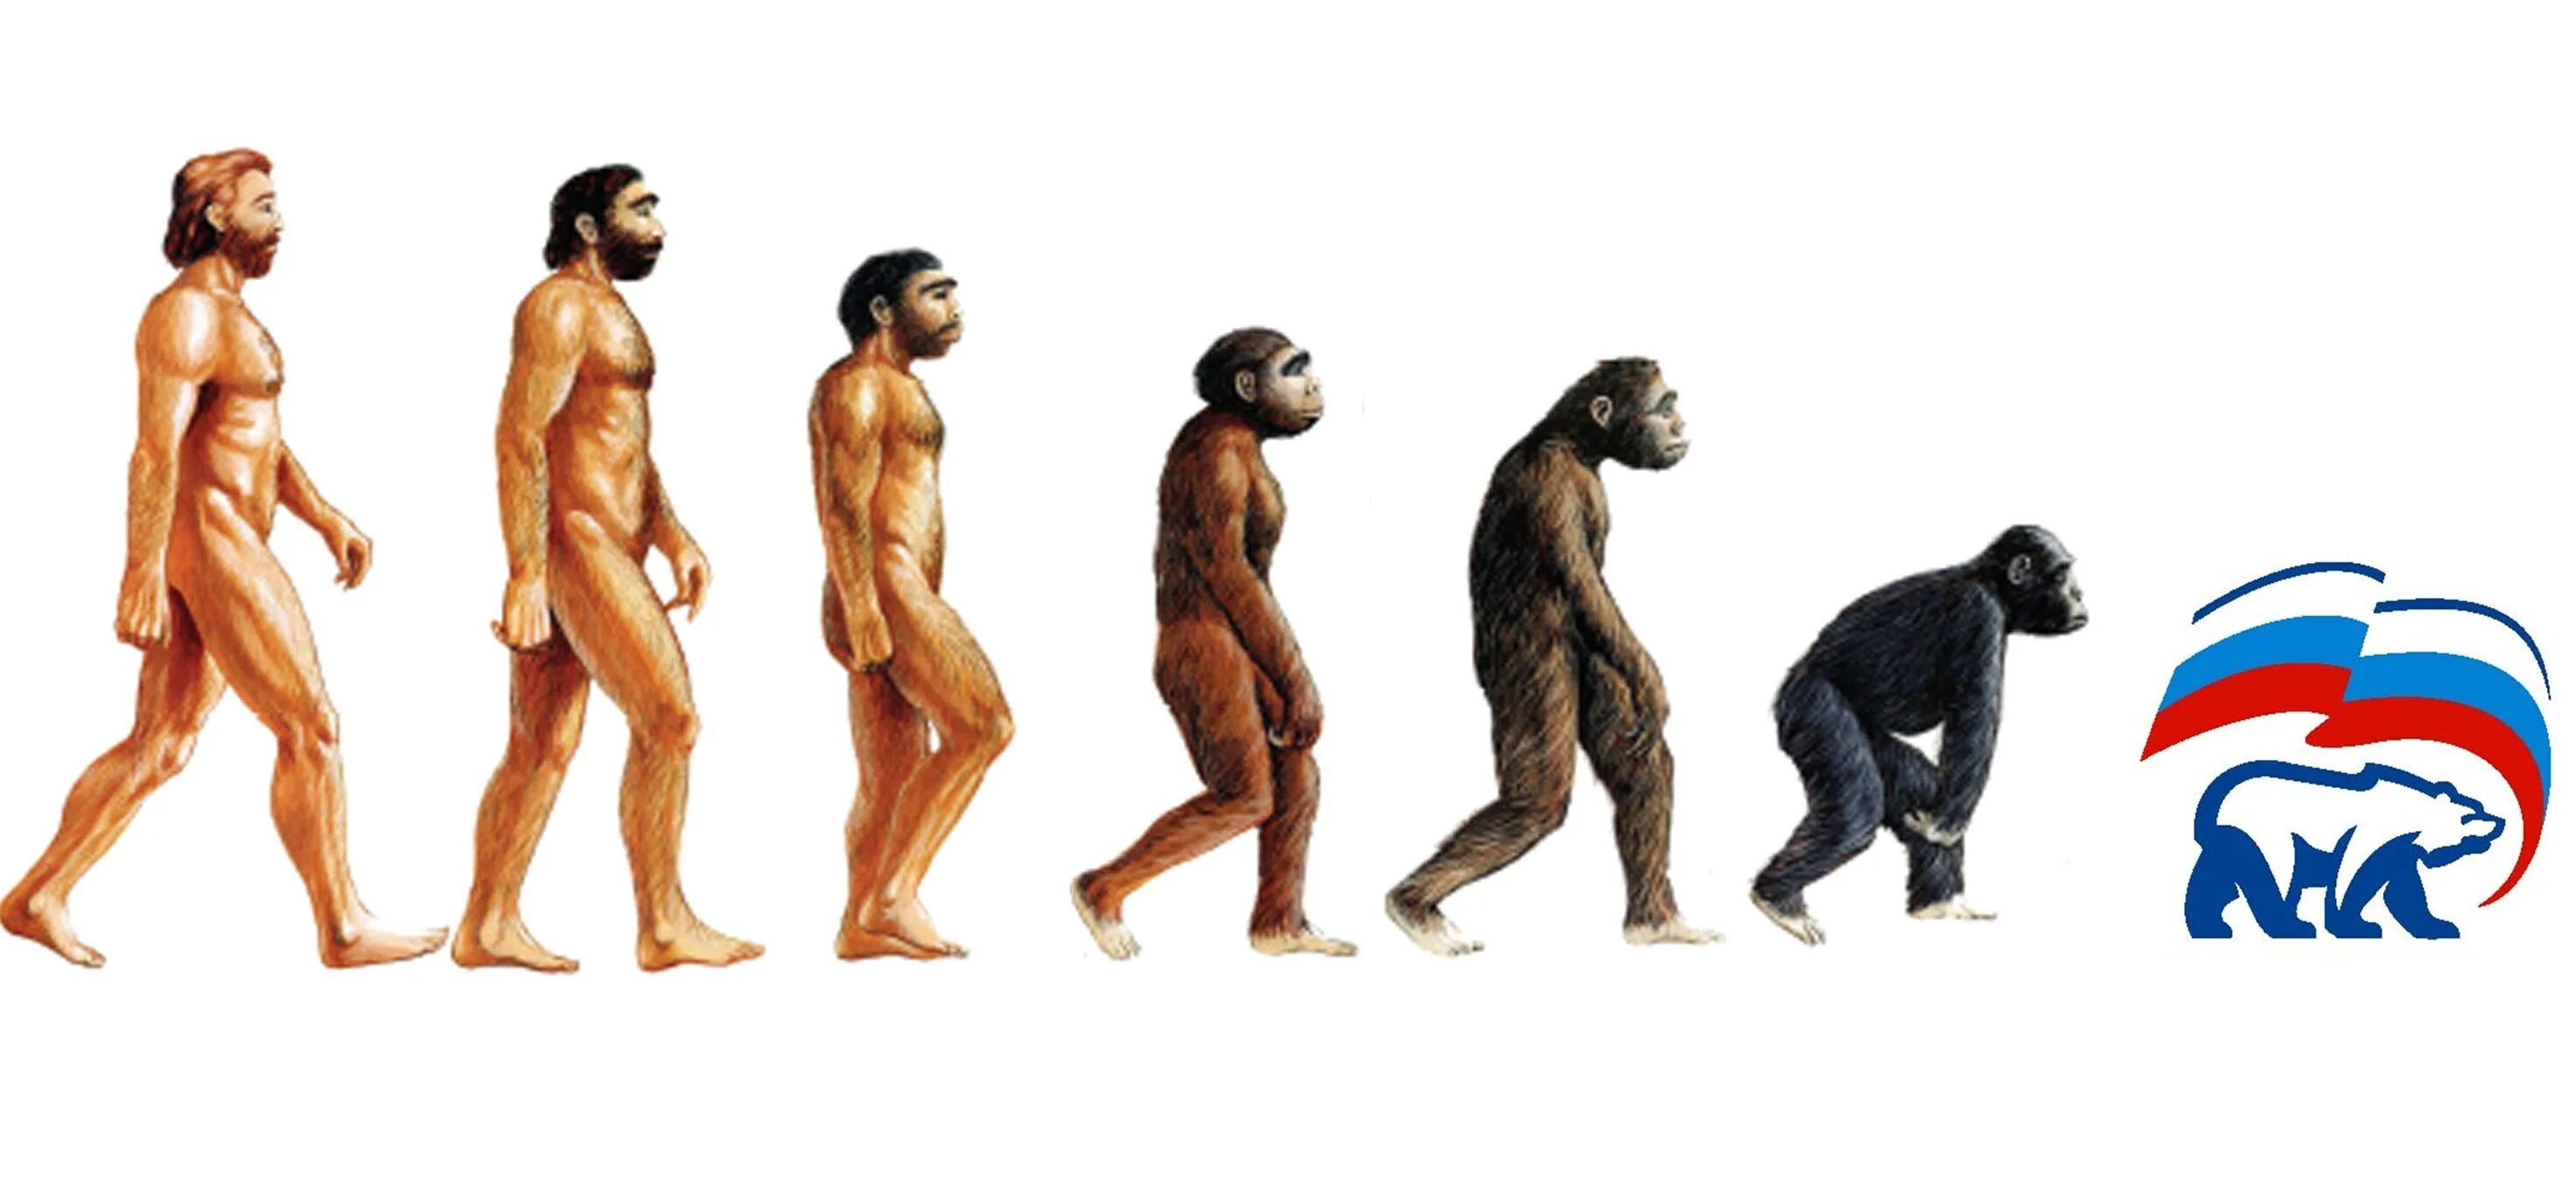 Человек превращается в обезьяну. Эволюция человека. Эволюция и деградация человека. От обезьяны к человеку. Процесс превращения человека в обезьяну